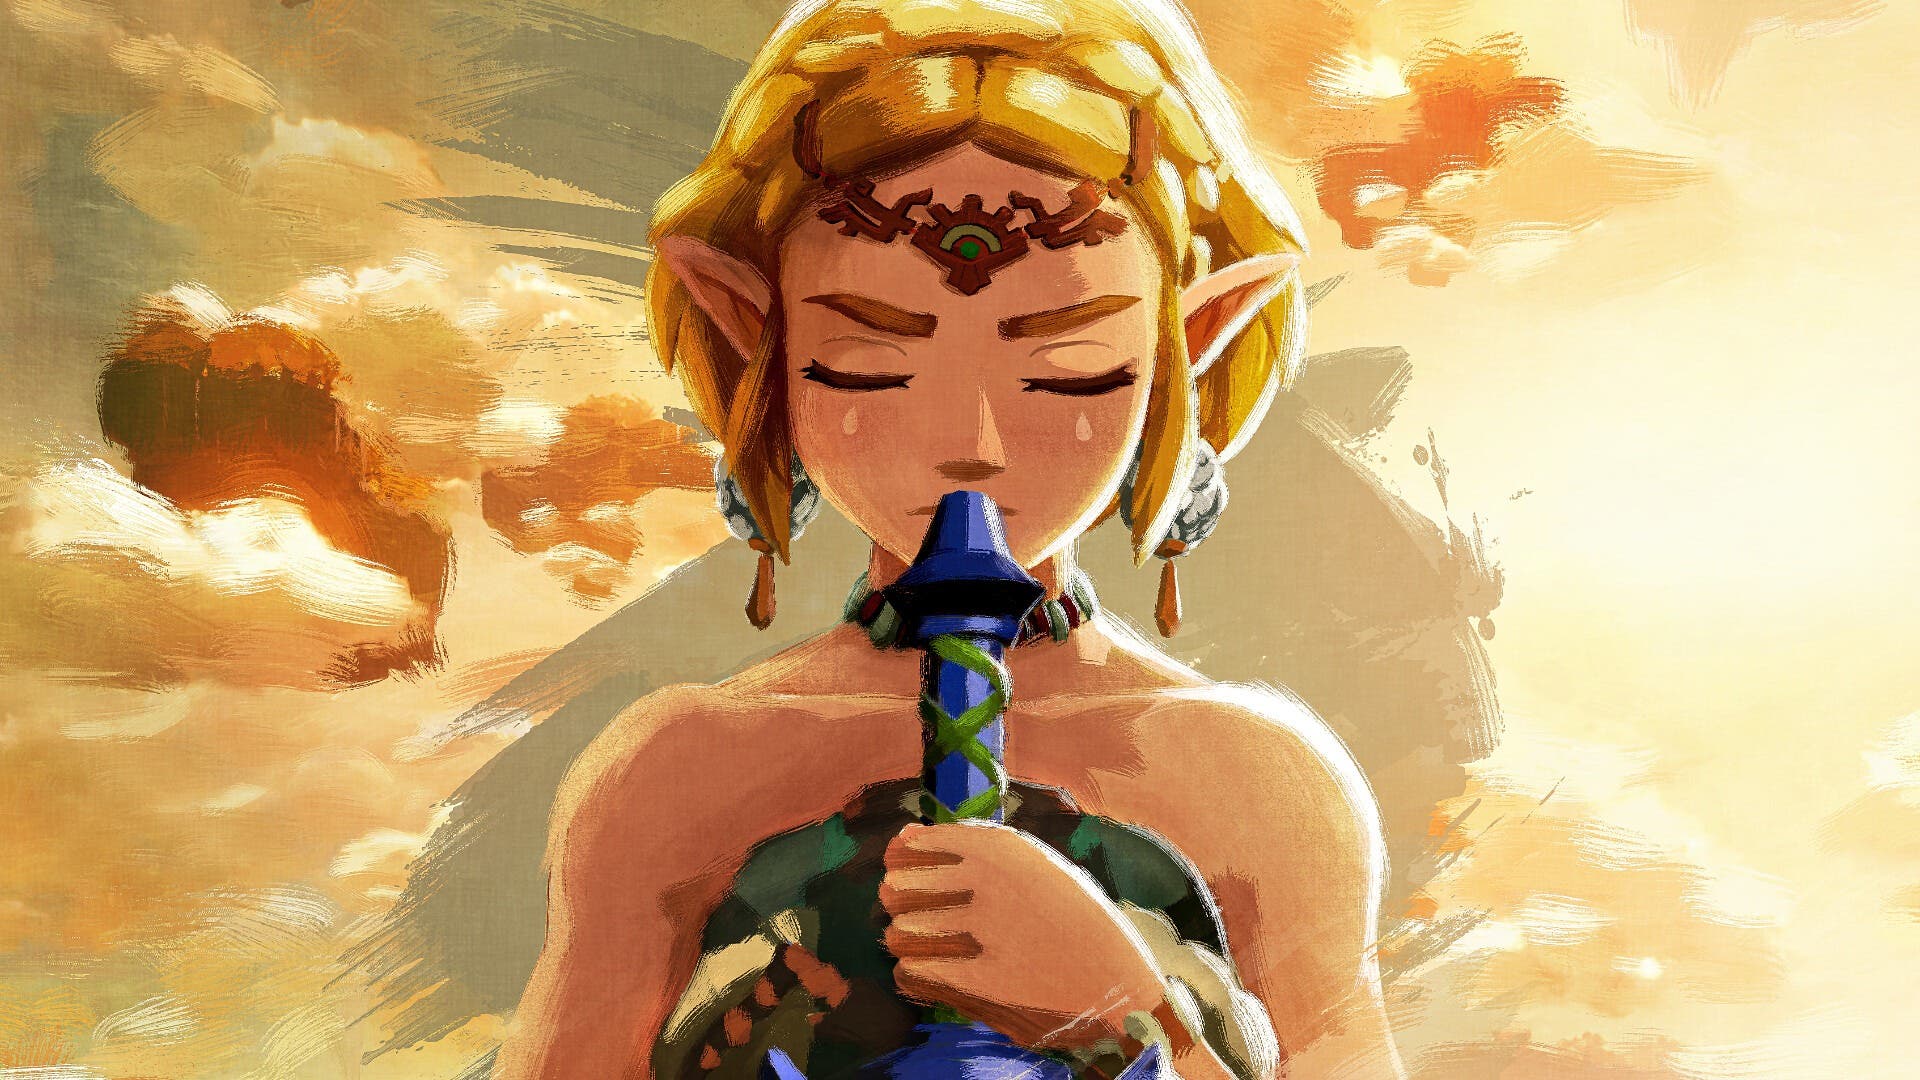 A la voz oficial de Zelda le encantaría repetir su papel en una película